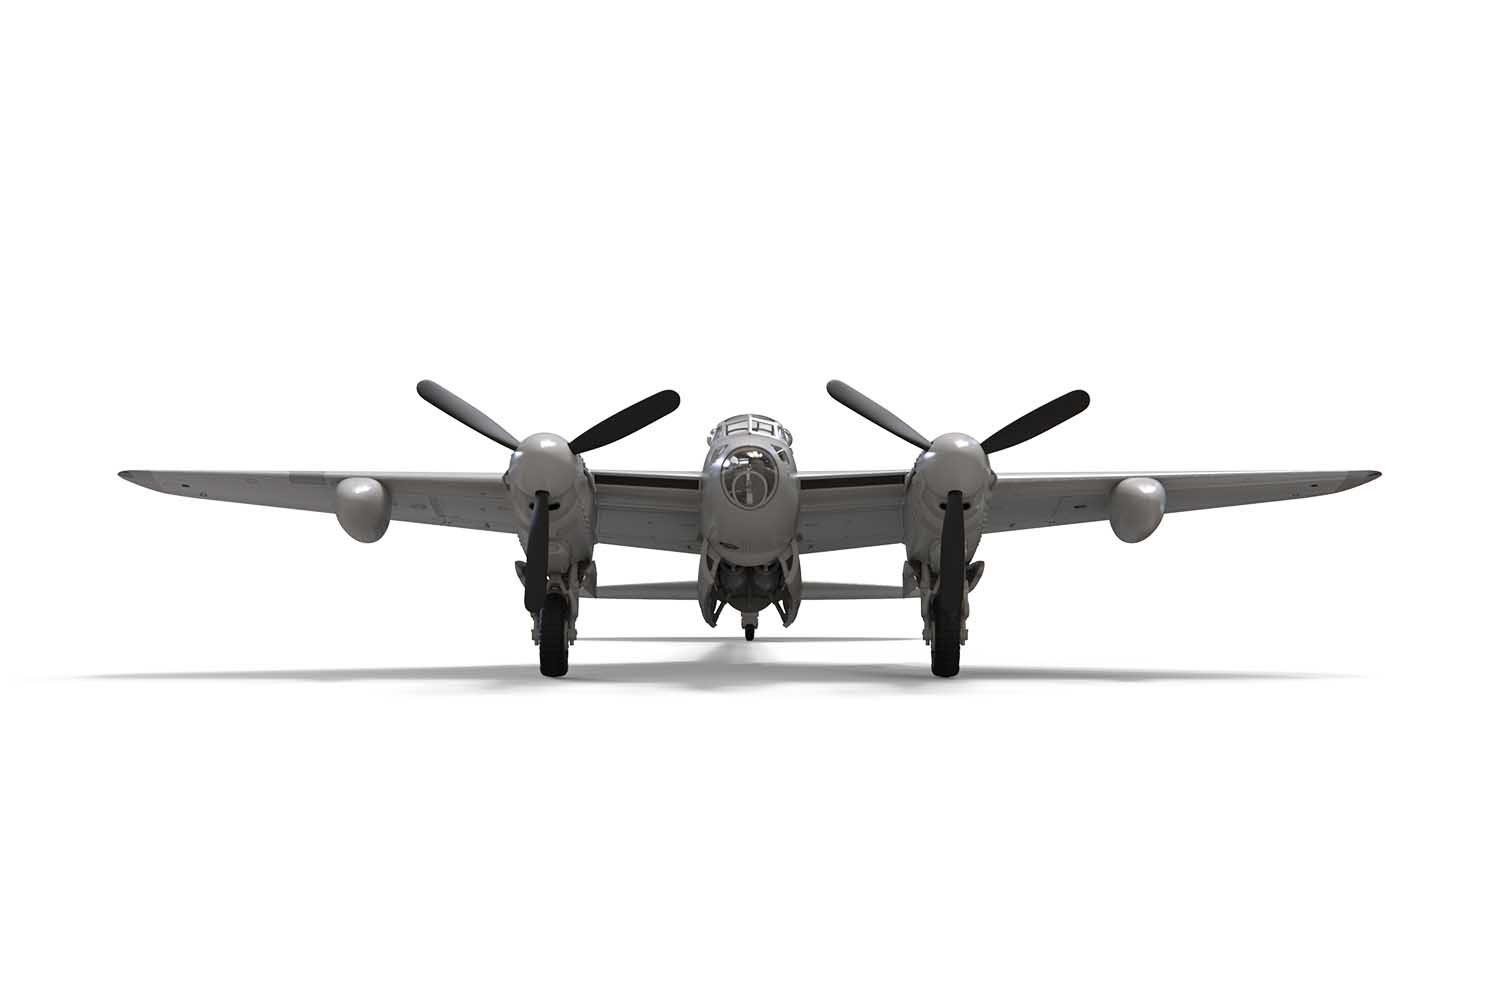 AIRFIX  Airfix de Havilland Mosquito Modèle réduit d’aéronef à aile fixe Kit de montage 1:72 